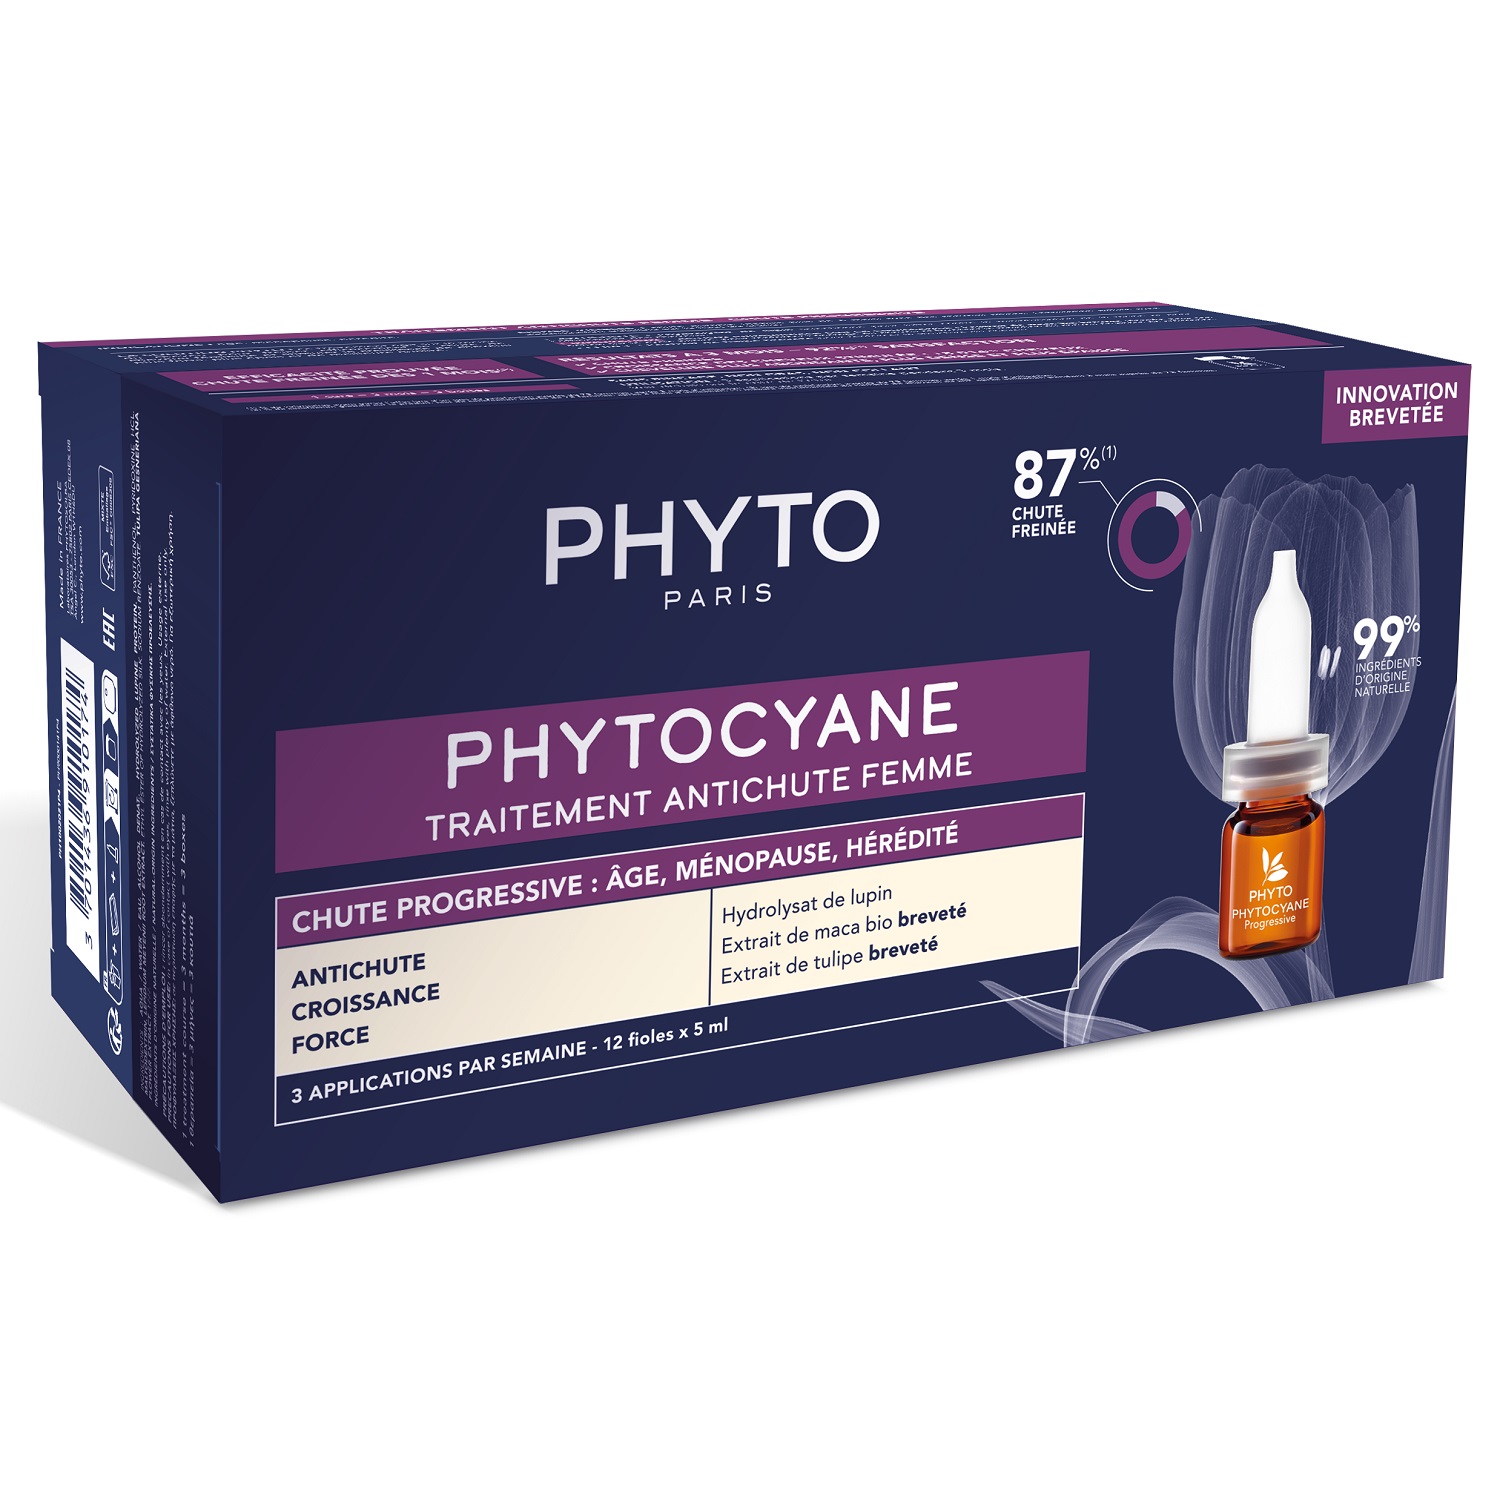 Phyto Сыворотка против выпадения волос для женщин, 12 флаконов х 5 мл (Phyto, Phytocyane) сыворотка phyto против выпадения волос для женщин 12 ампул х 5 мл